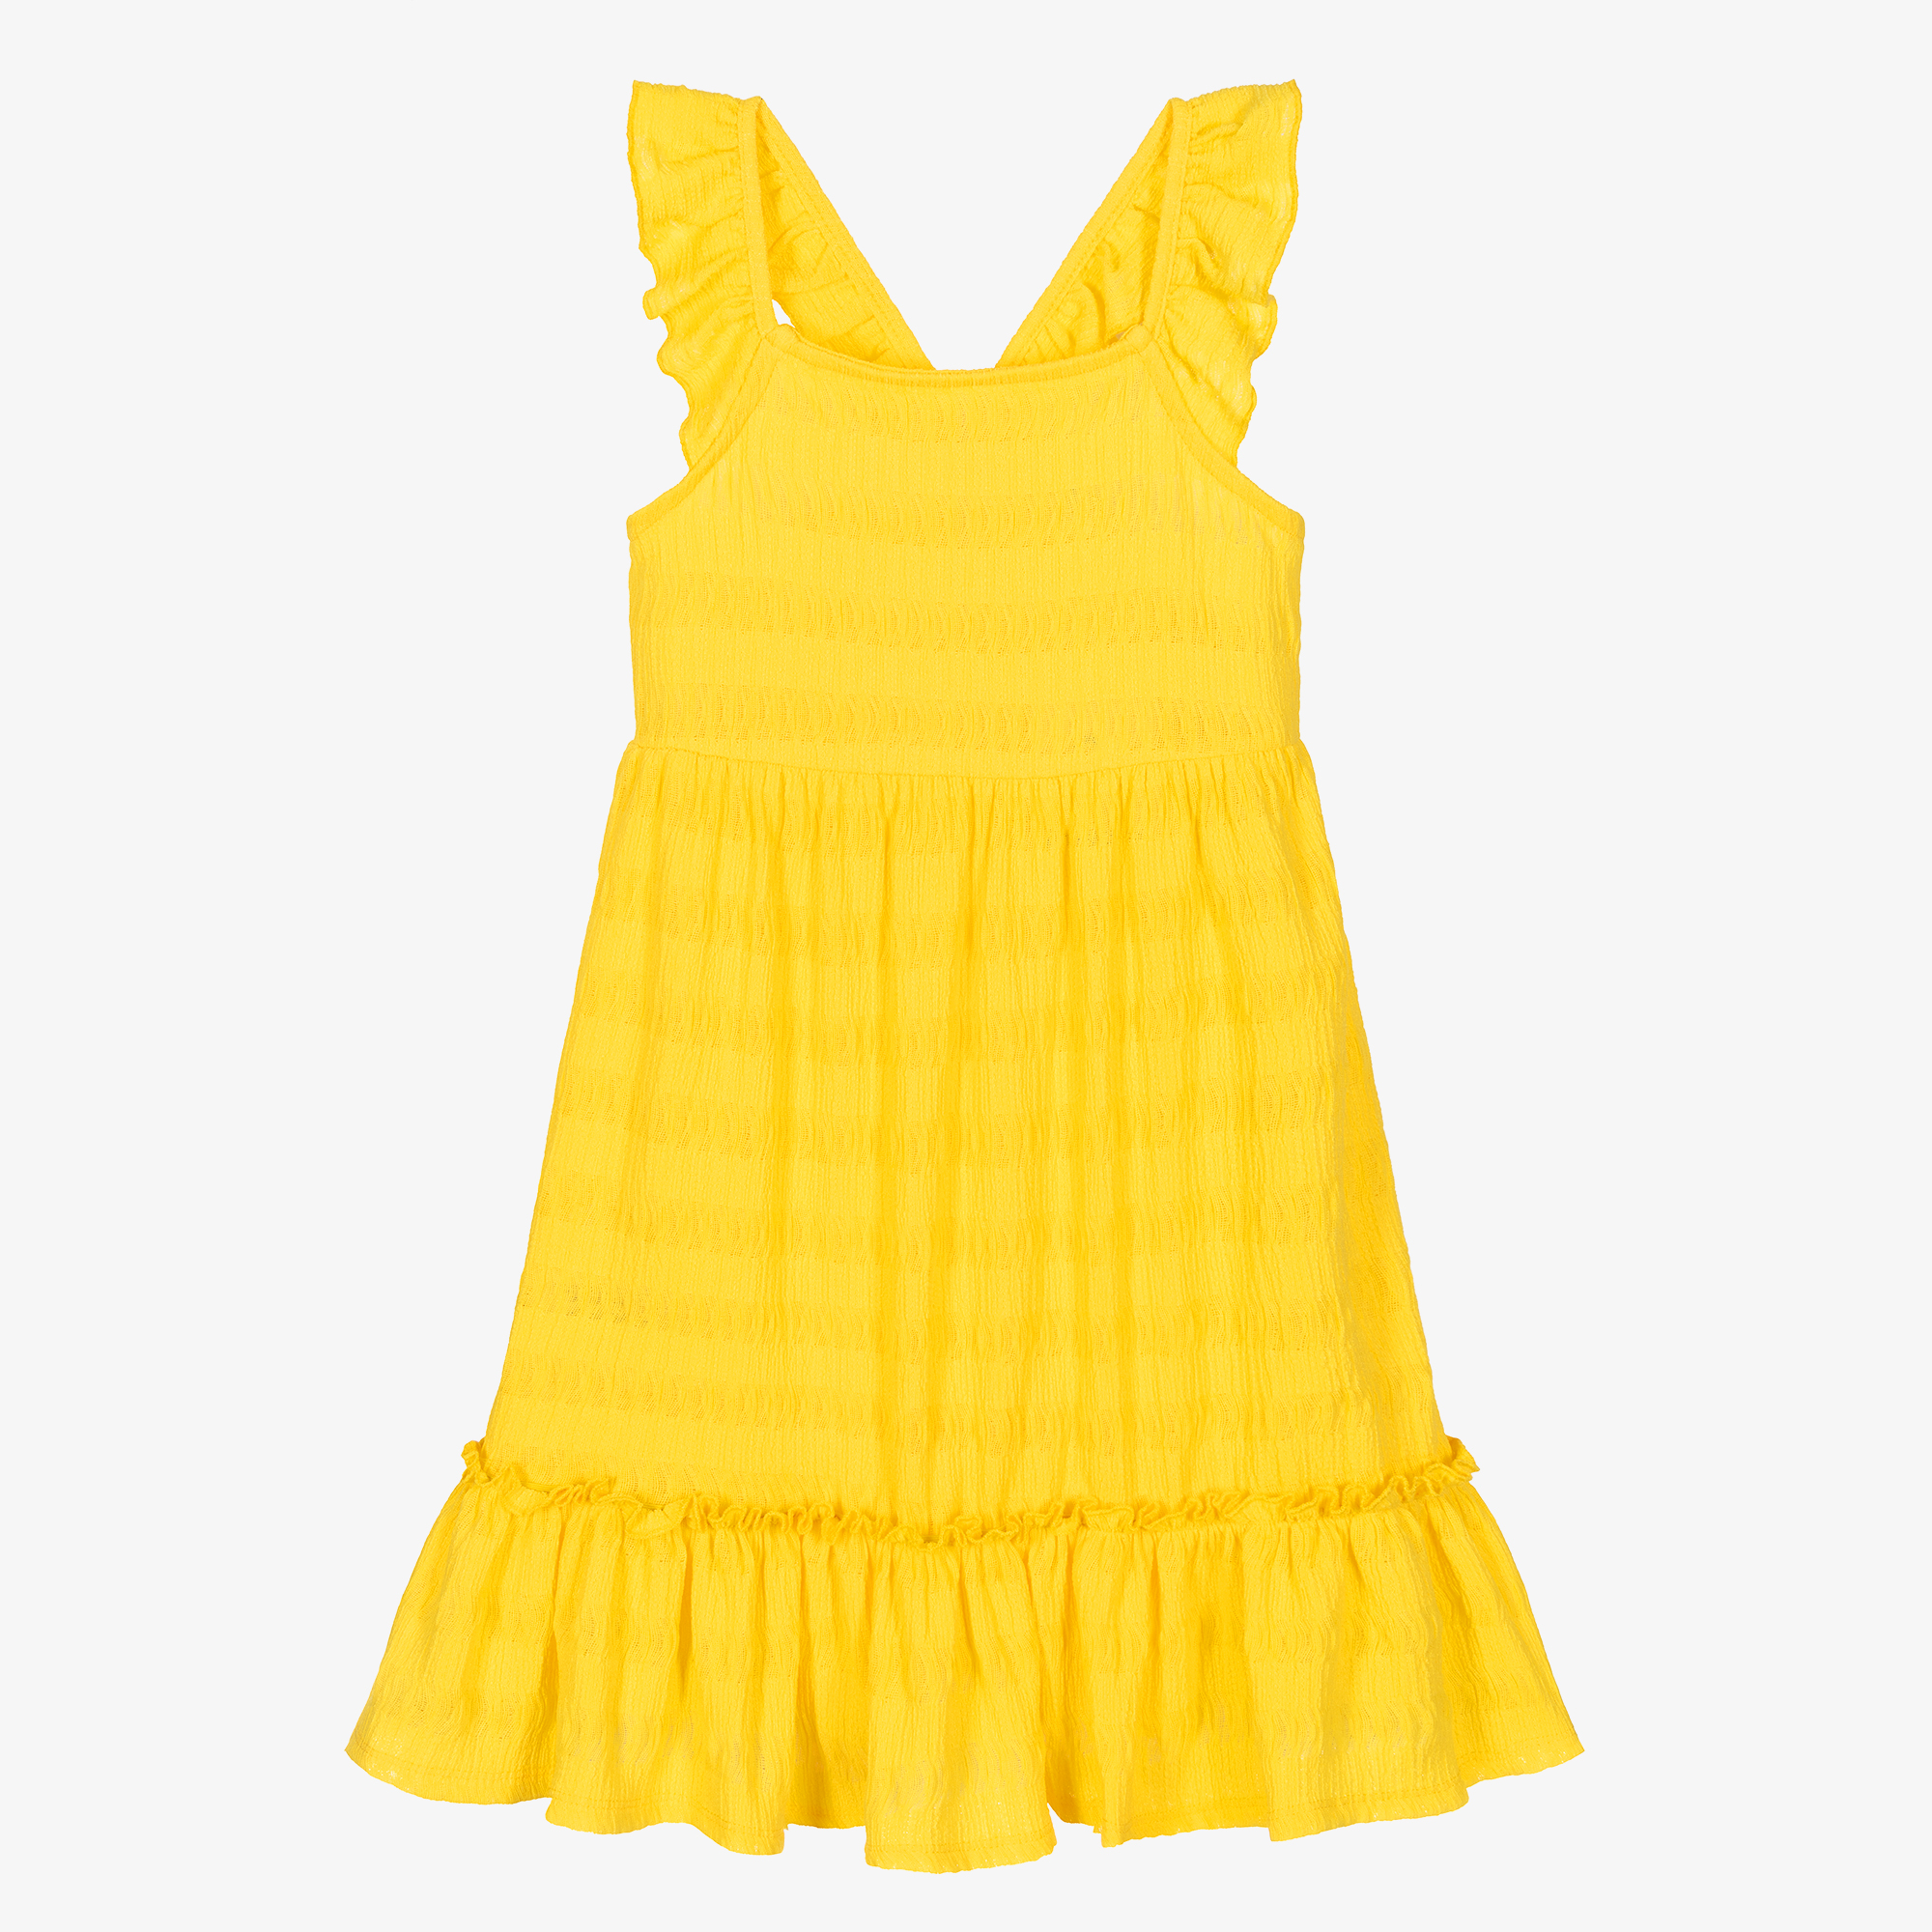 yellow seersucker dress